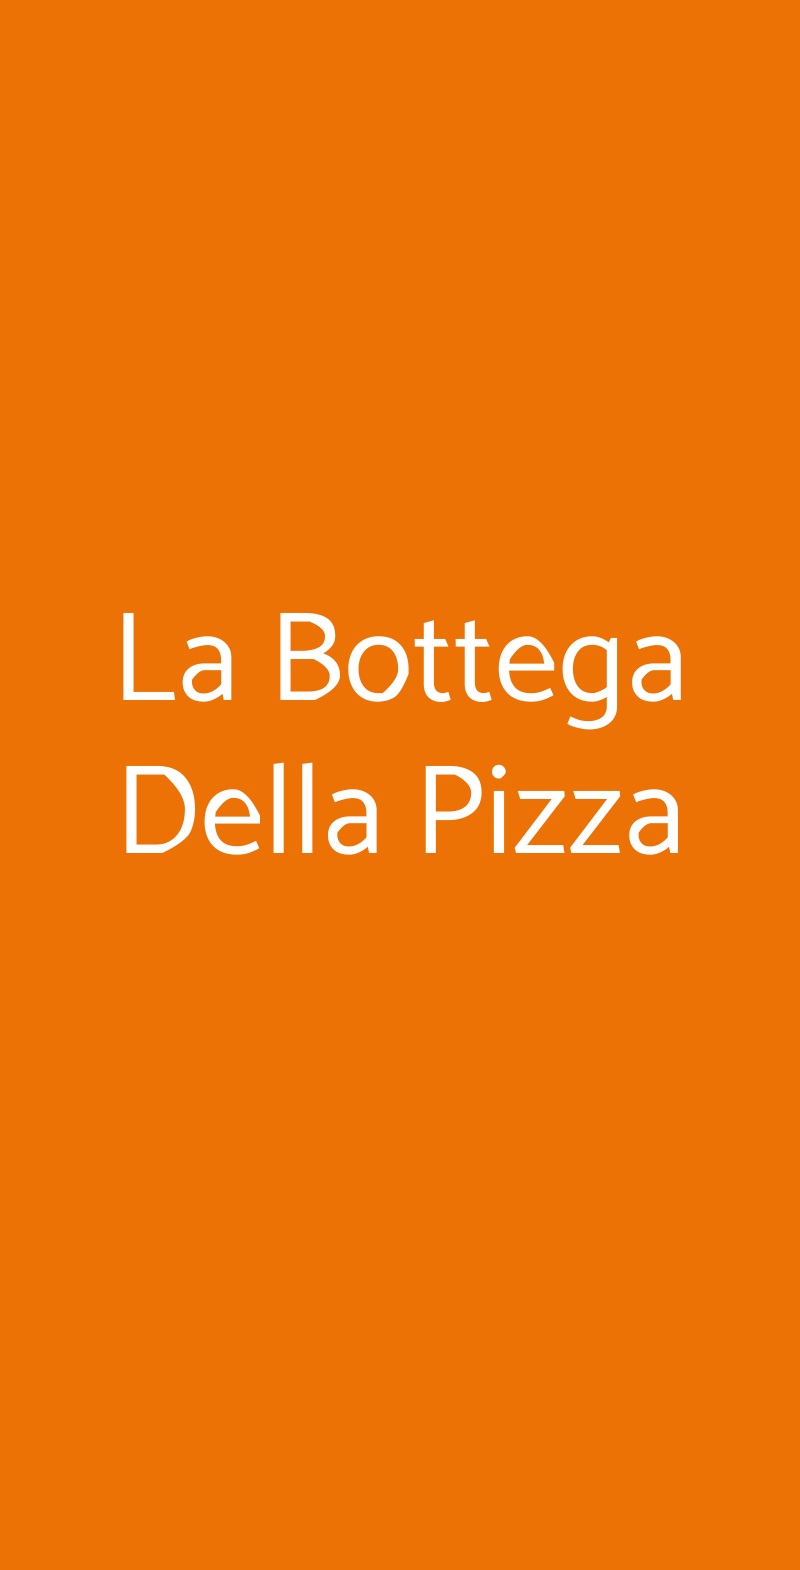 La Bottega Della Pizza Milano menù 1 pagina